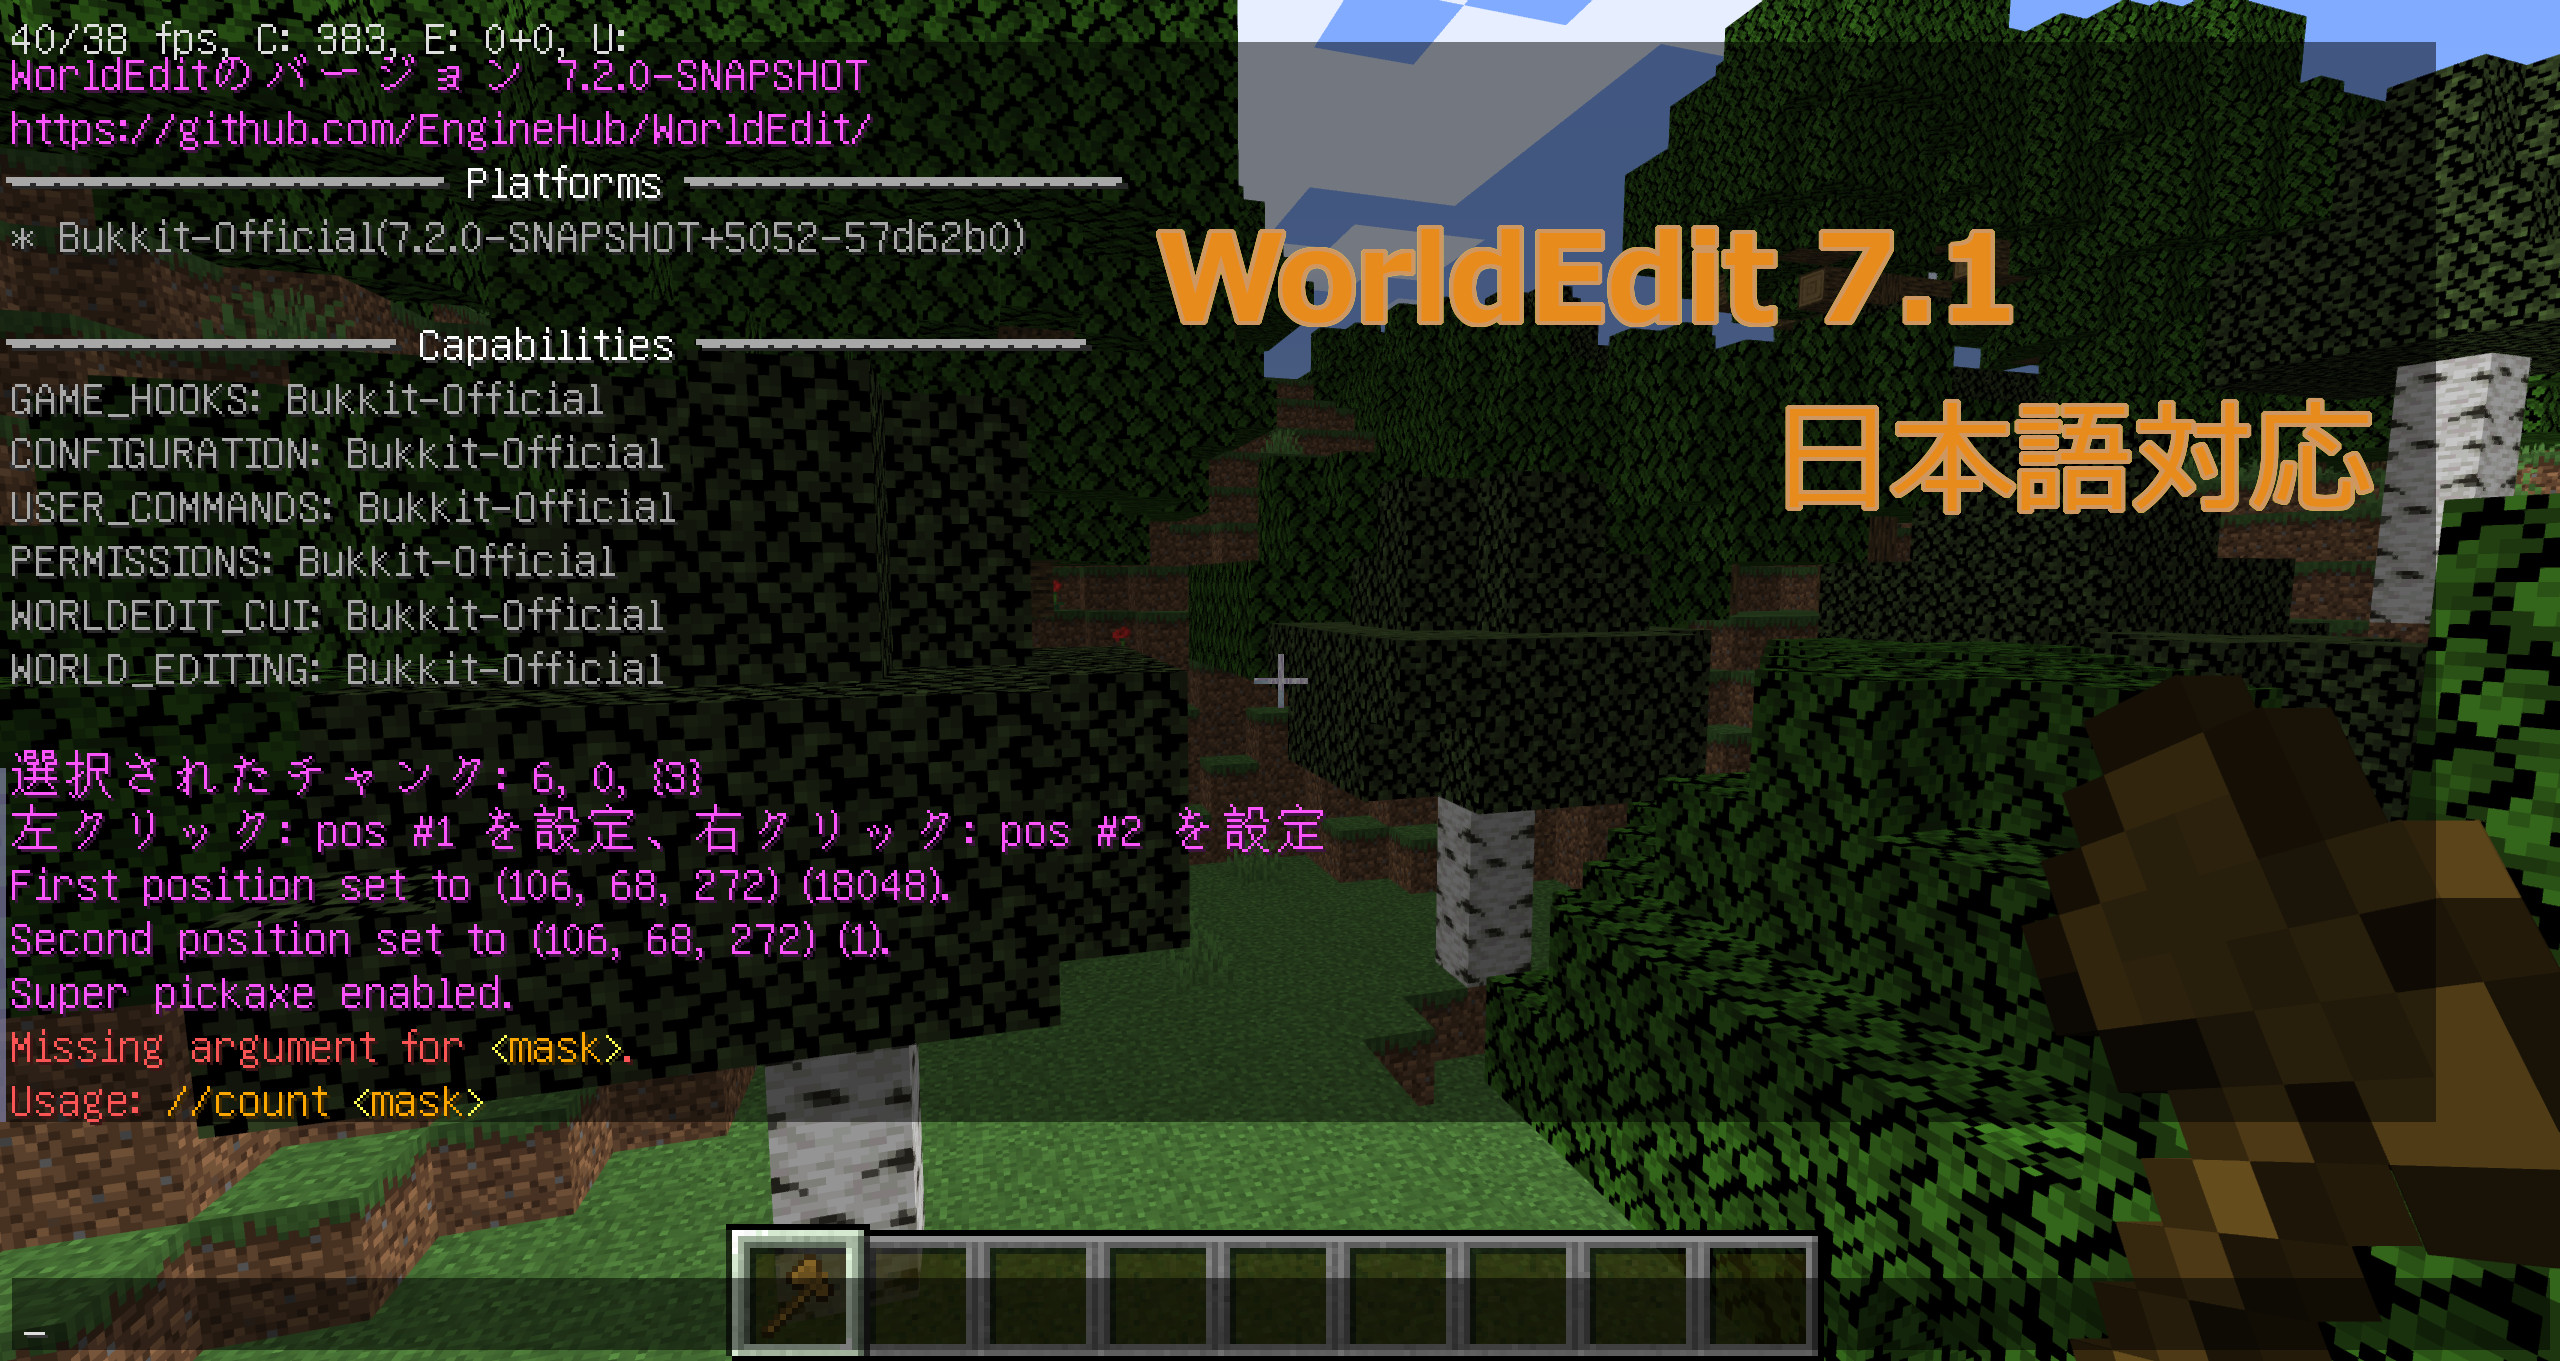 WorldEditが日本語に対応、文字化けしたときの修正方法と英語に戻す方法